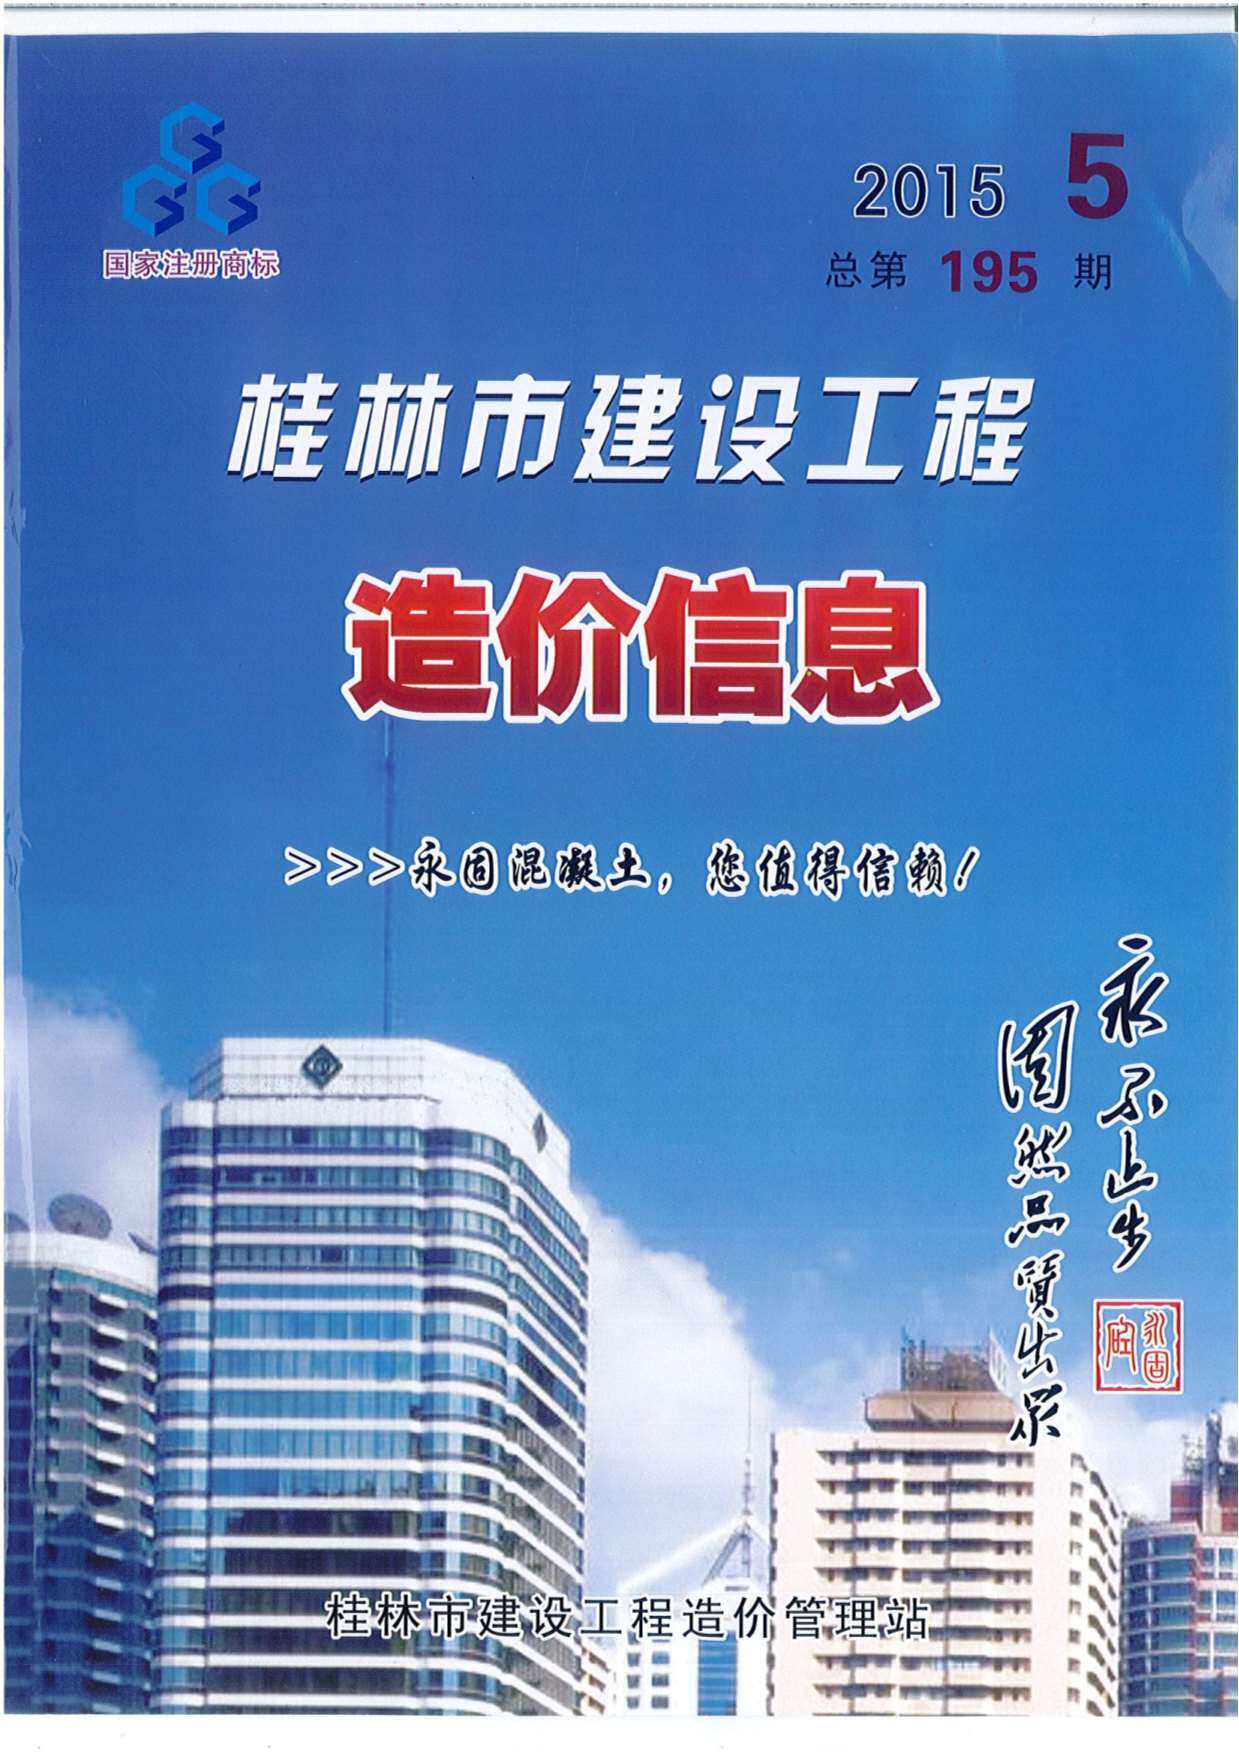 桂林市2015年5月工程造价信息期刊